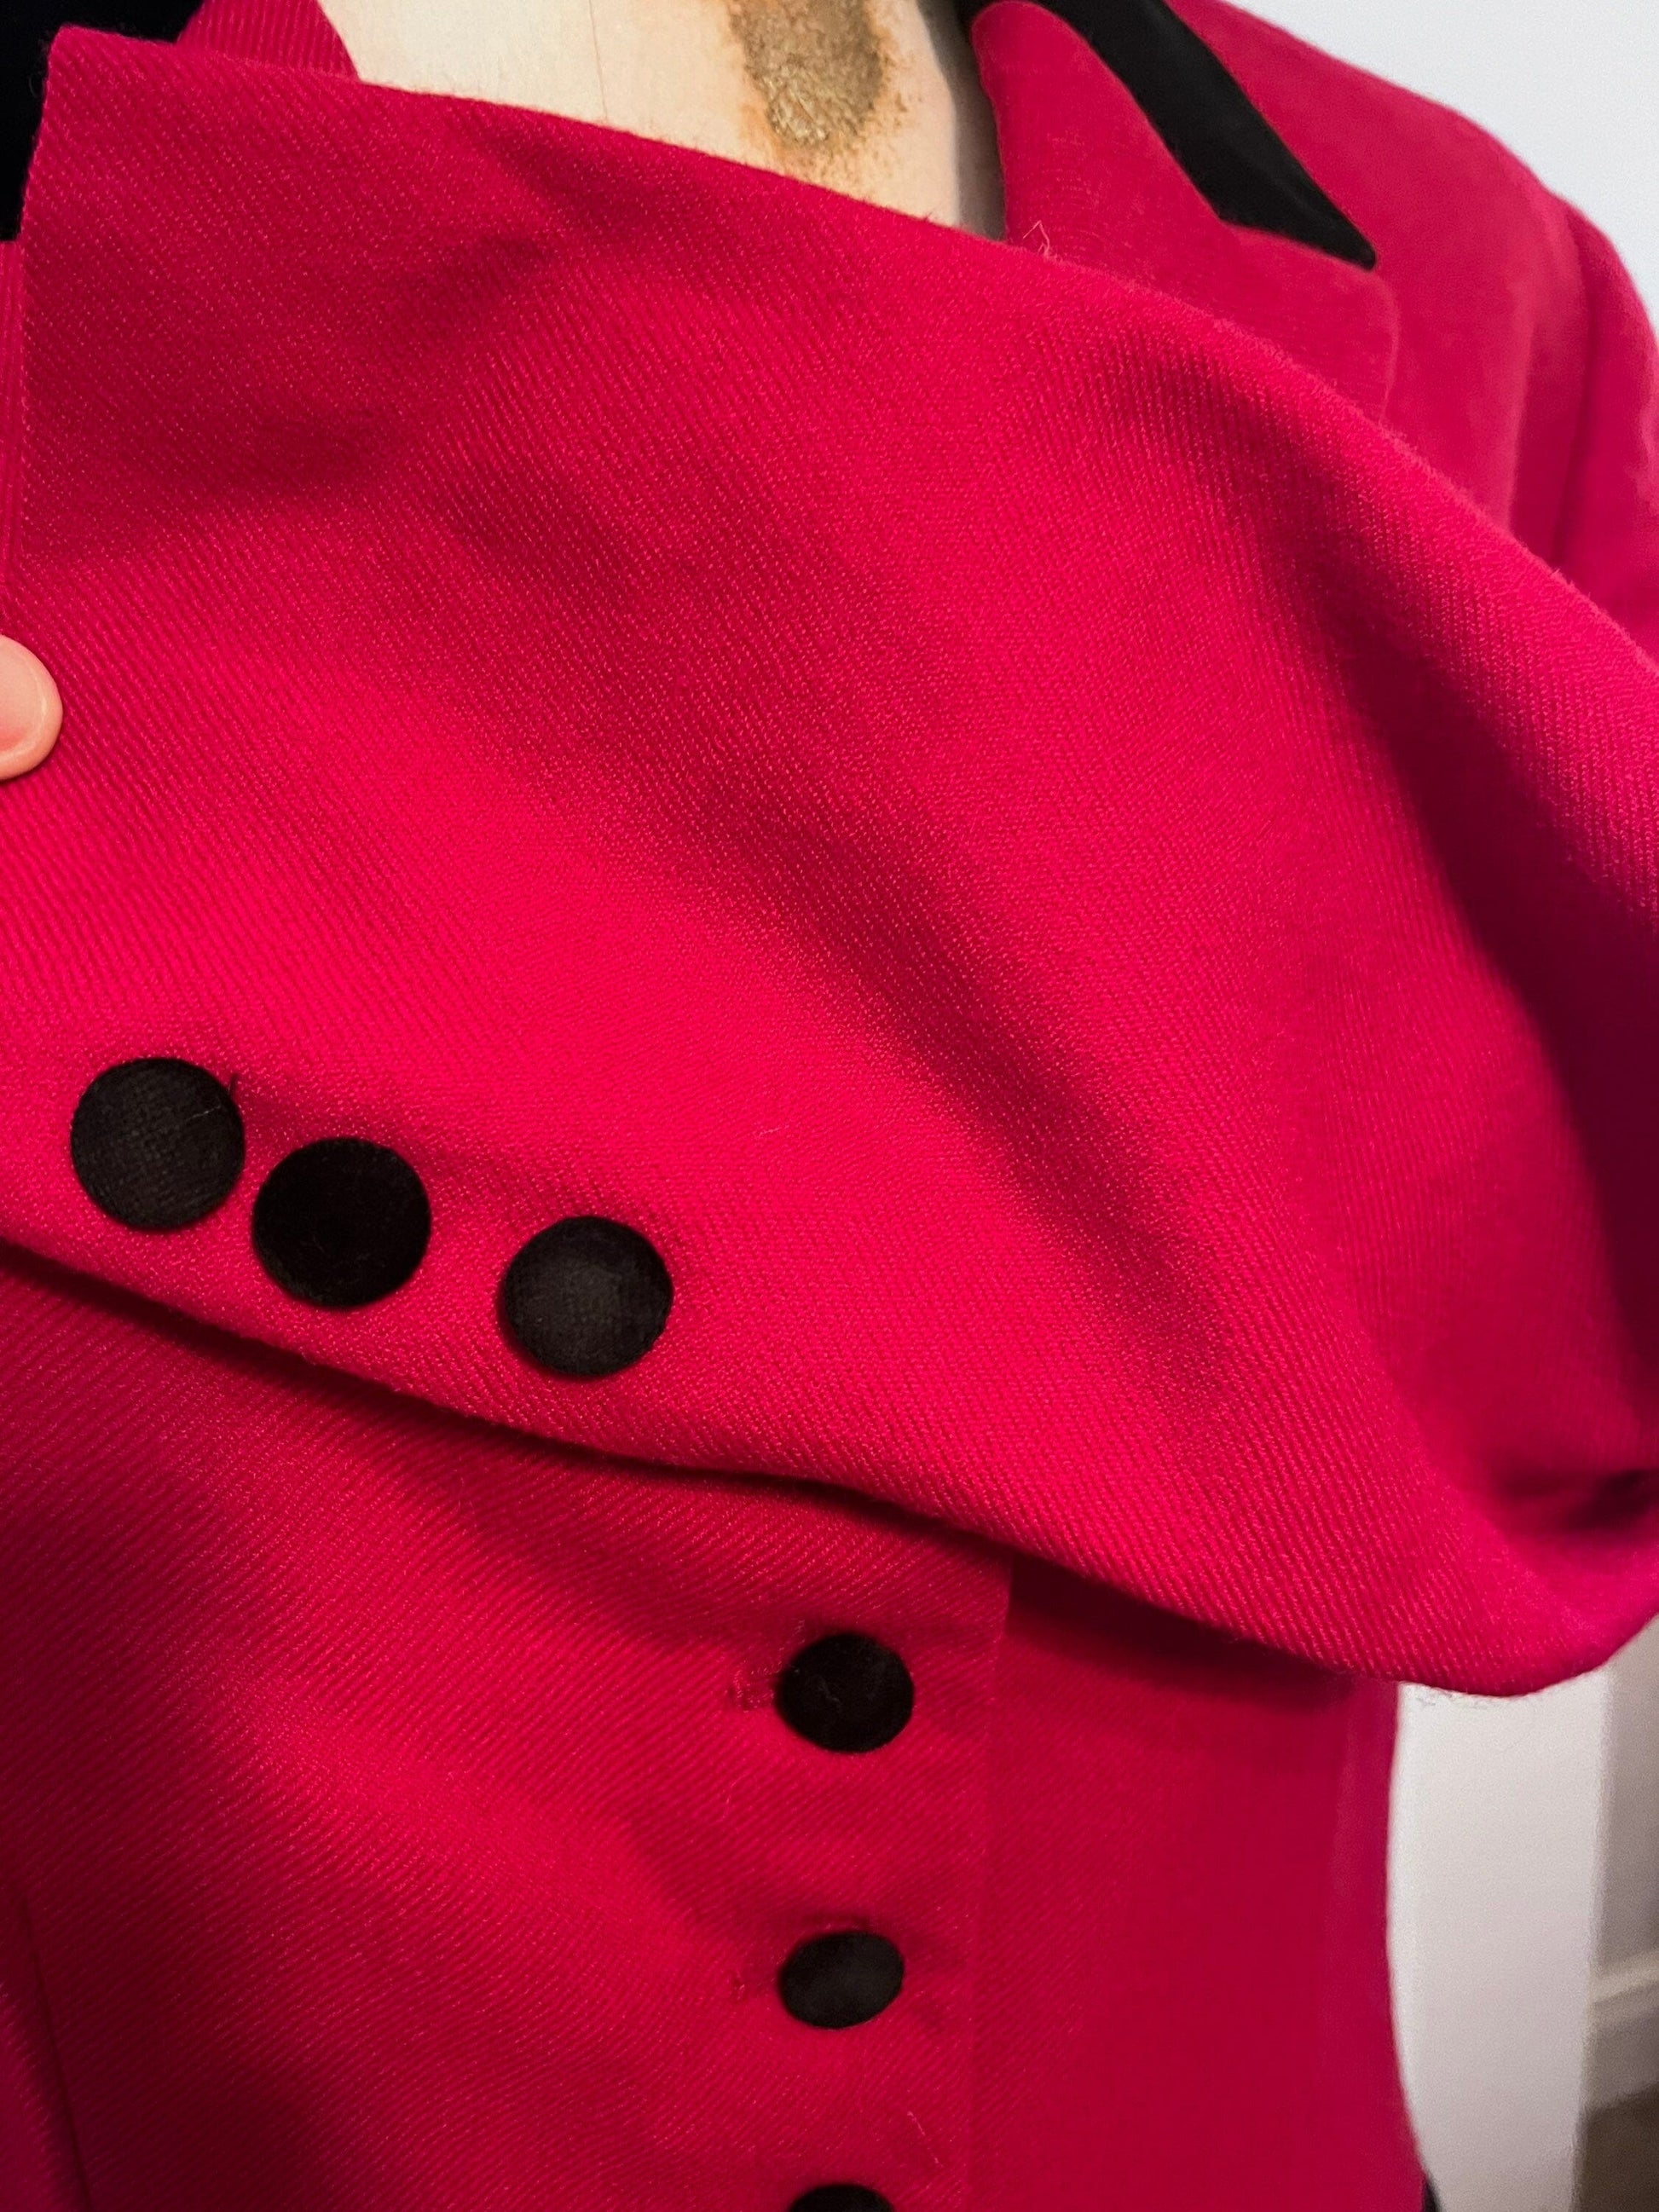 Vintage Red Riding Jacket Black collars Scarlet Blazer Jacket - excellent condition Jennifer Moore US10